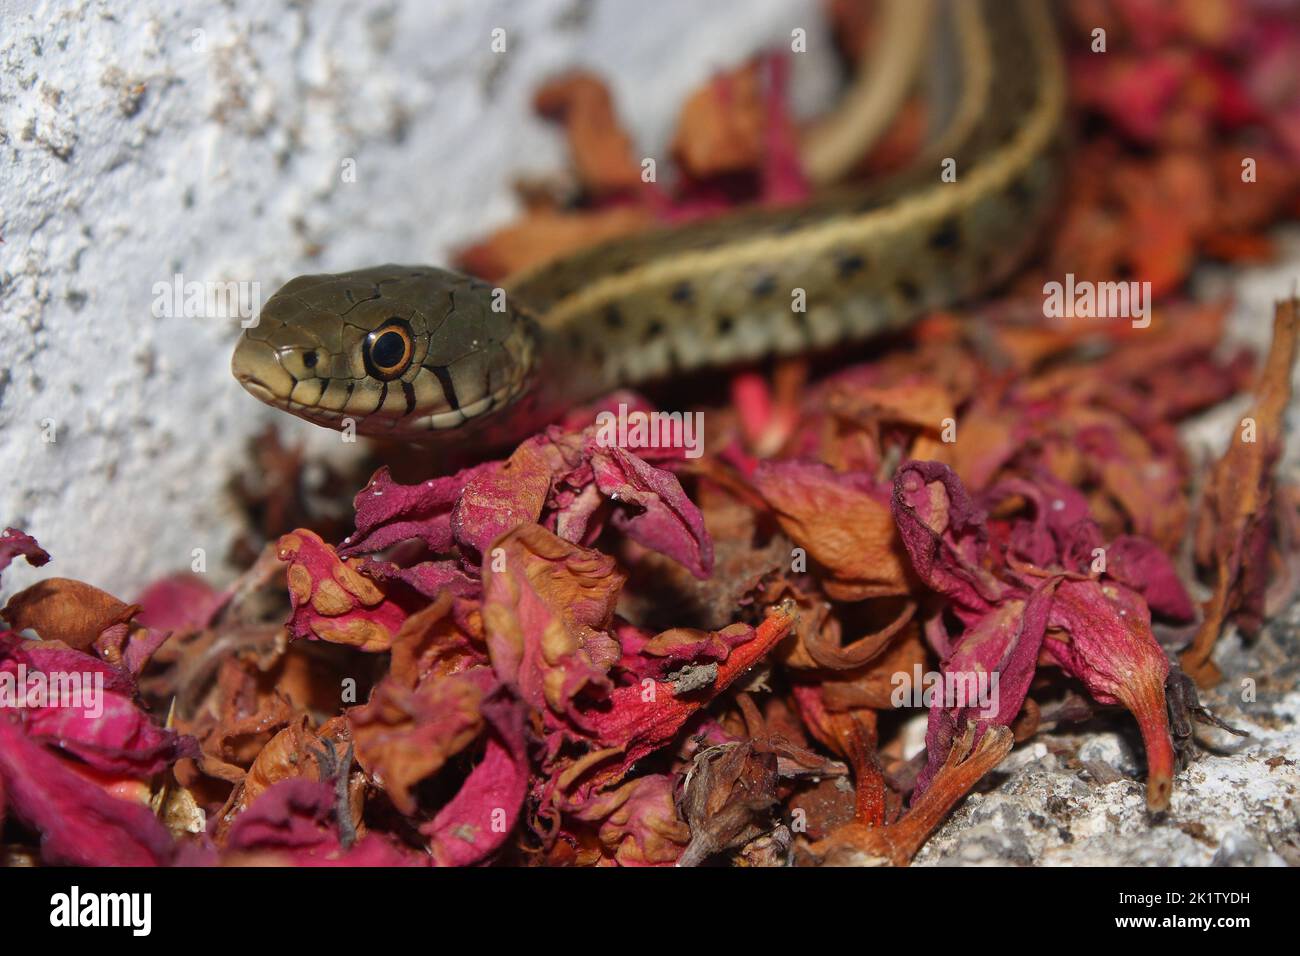 Il serpente d'erba, serpente ad anello, o serpente d'acqua (Natrix natrix persa) ha striato sottospecie di un serpente comune sui petali rossi in un'area urbana Foto Stock